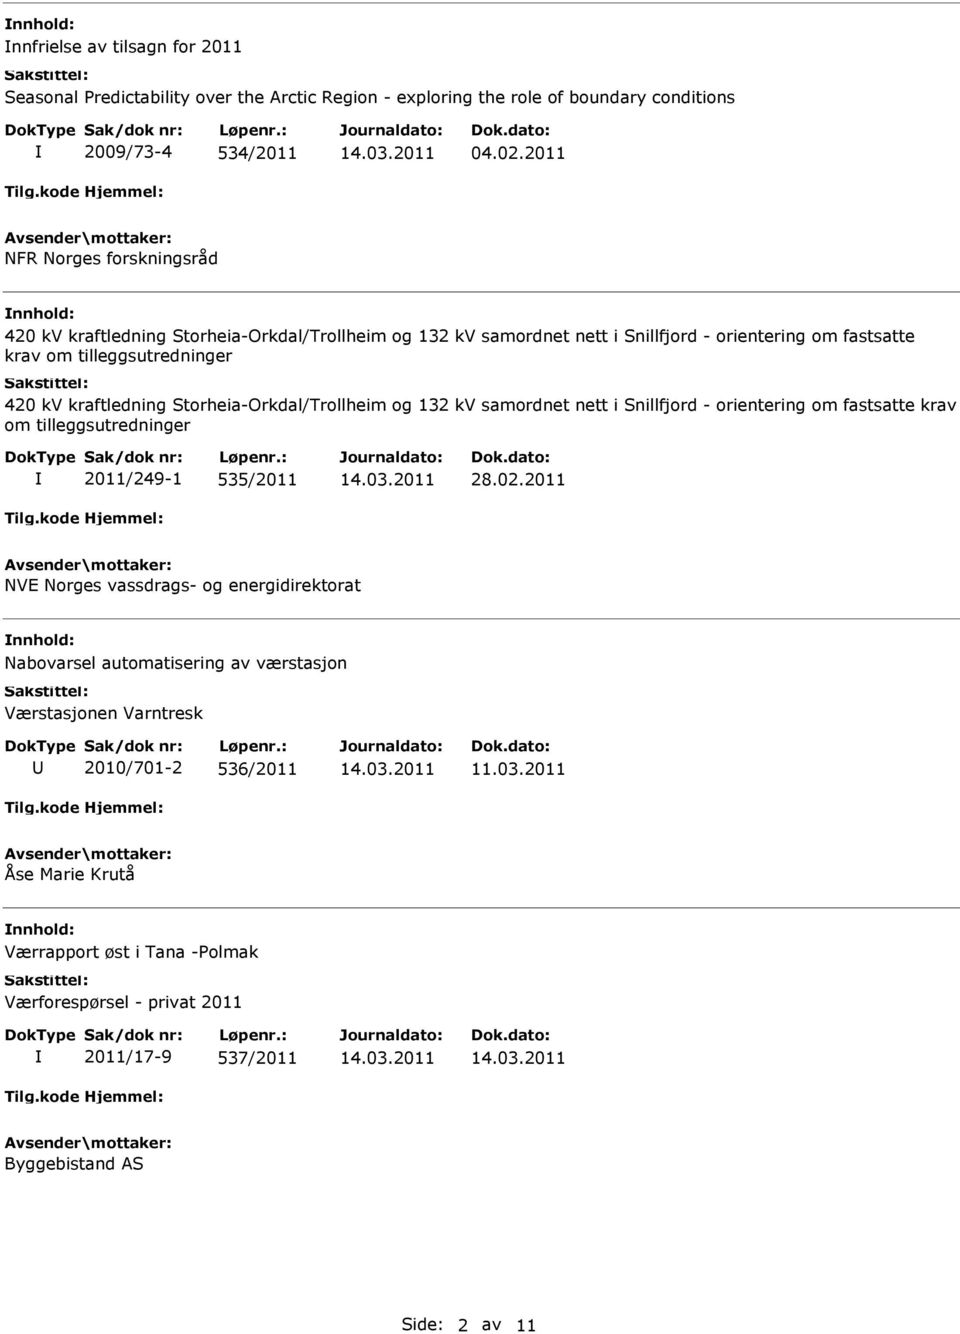 kraftledning Storheia-Orkdal/Trollheim og 132 kv samordnet nett i Snillfjord - orientering om fastsatte krav om tilleggsutredninger 2011/249-1 535/2011 28.02.